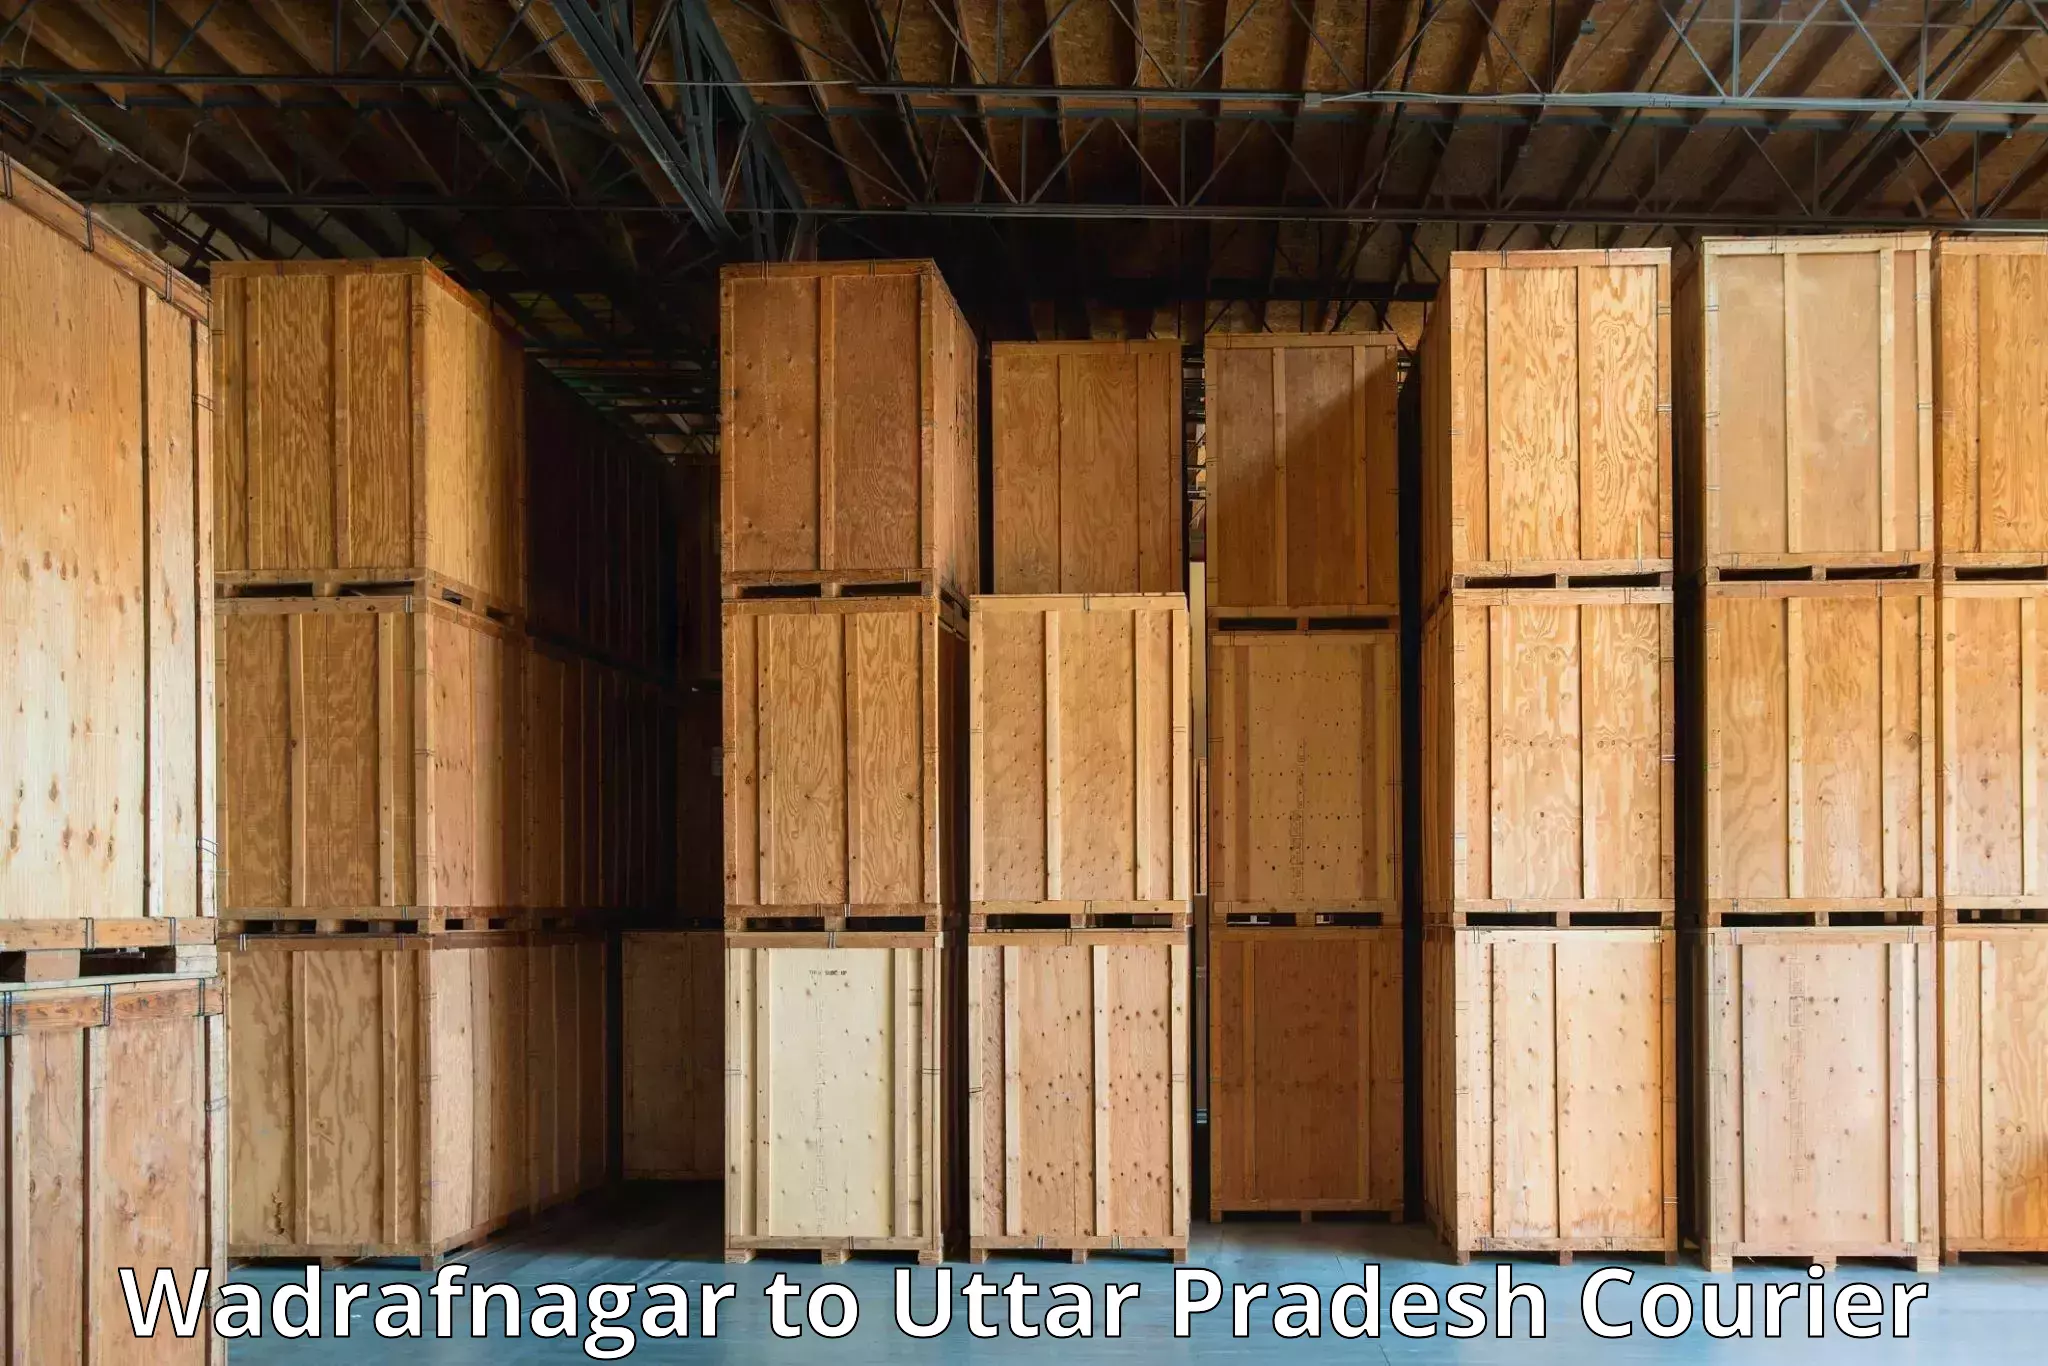 Comprehensive delivery network Wadrafnagar to Agra